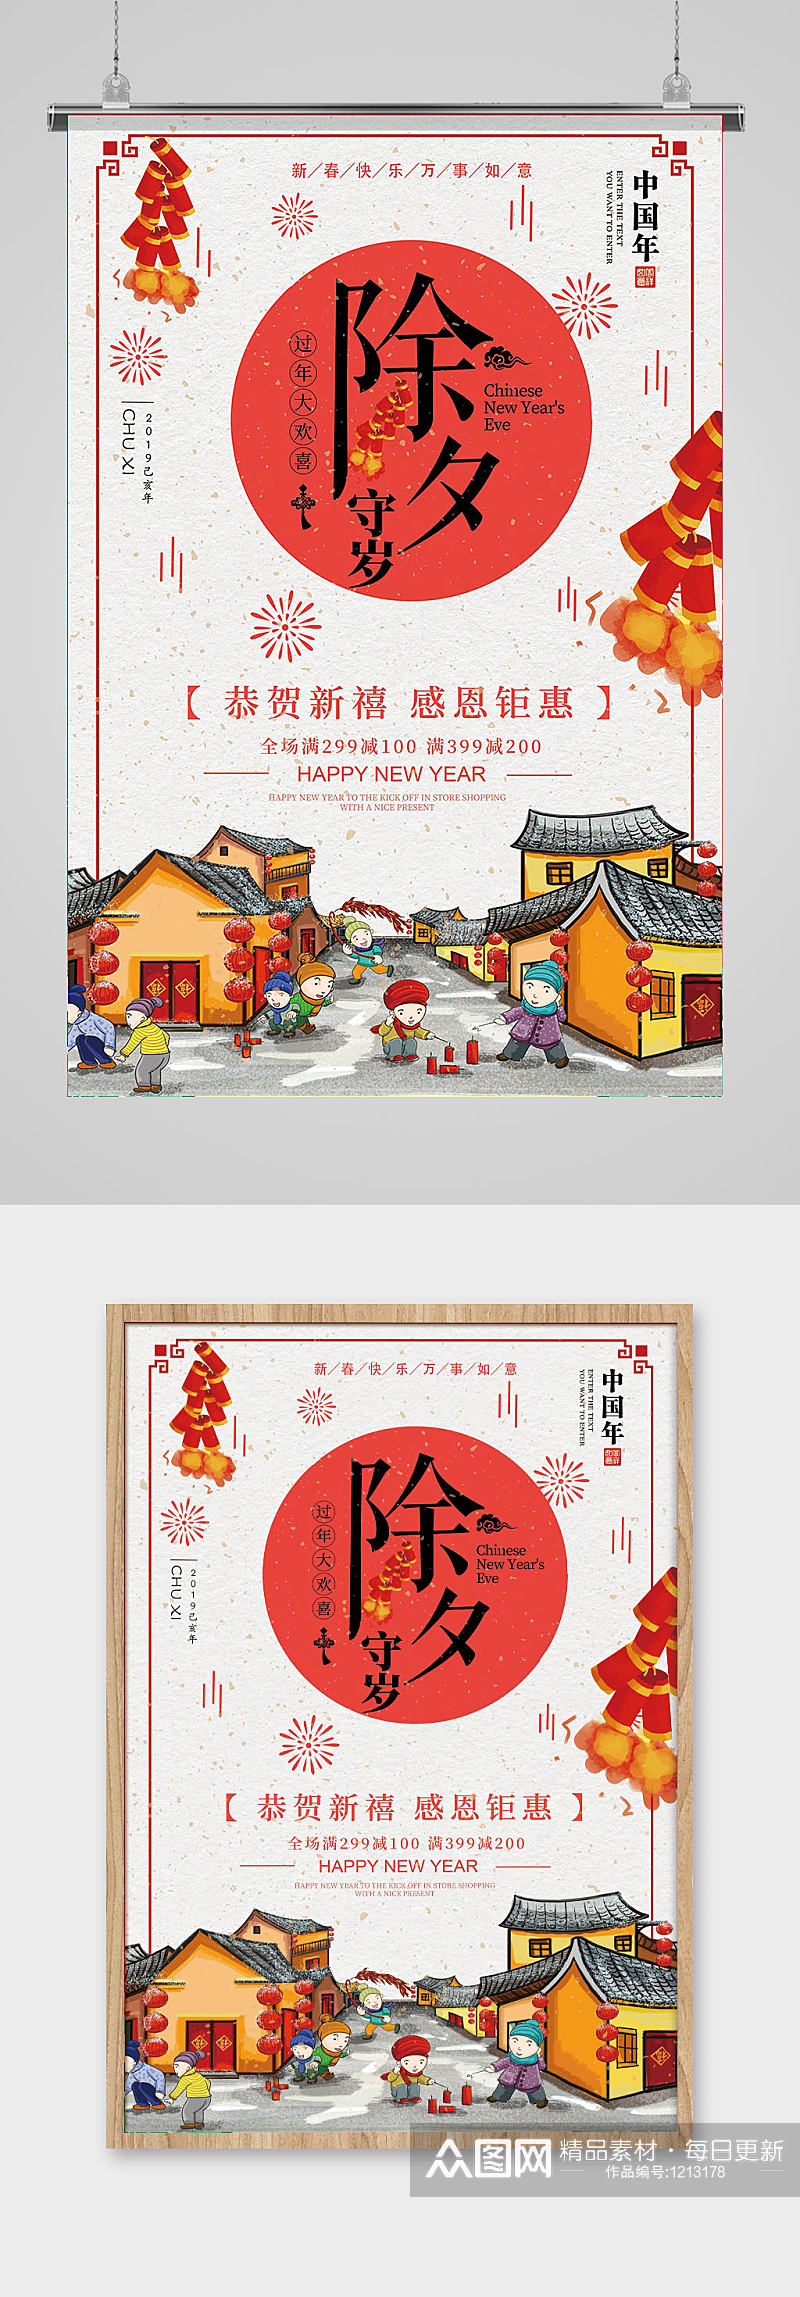 中国传统过年街道插画除夕节日海报素材